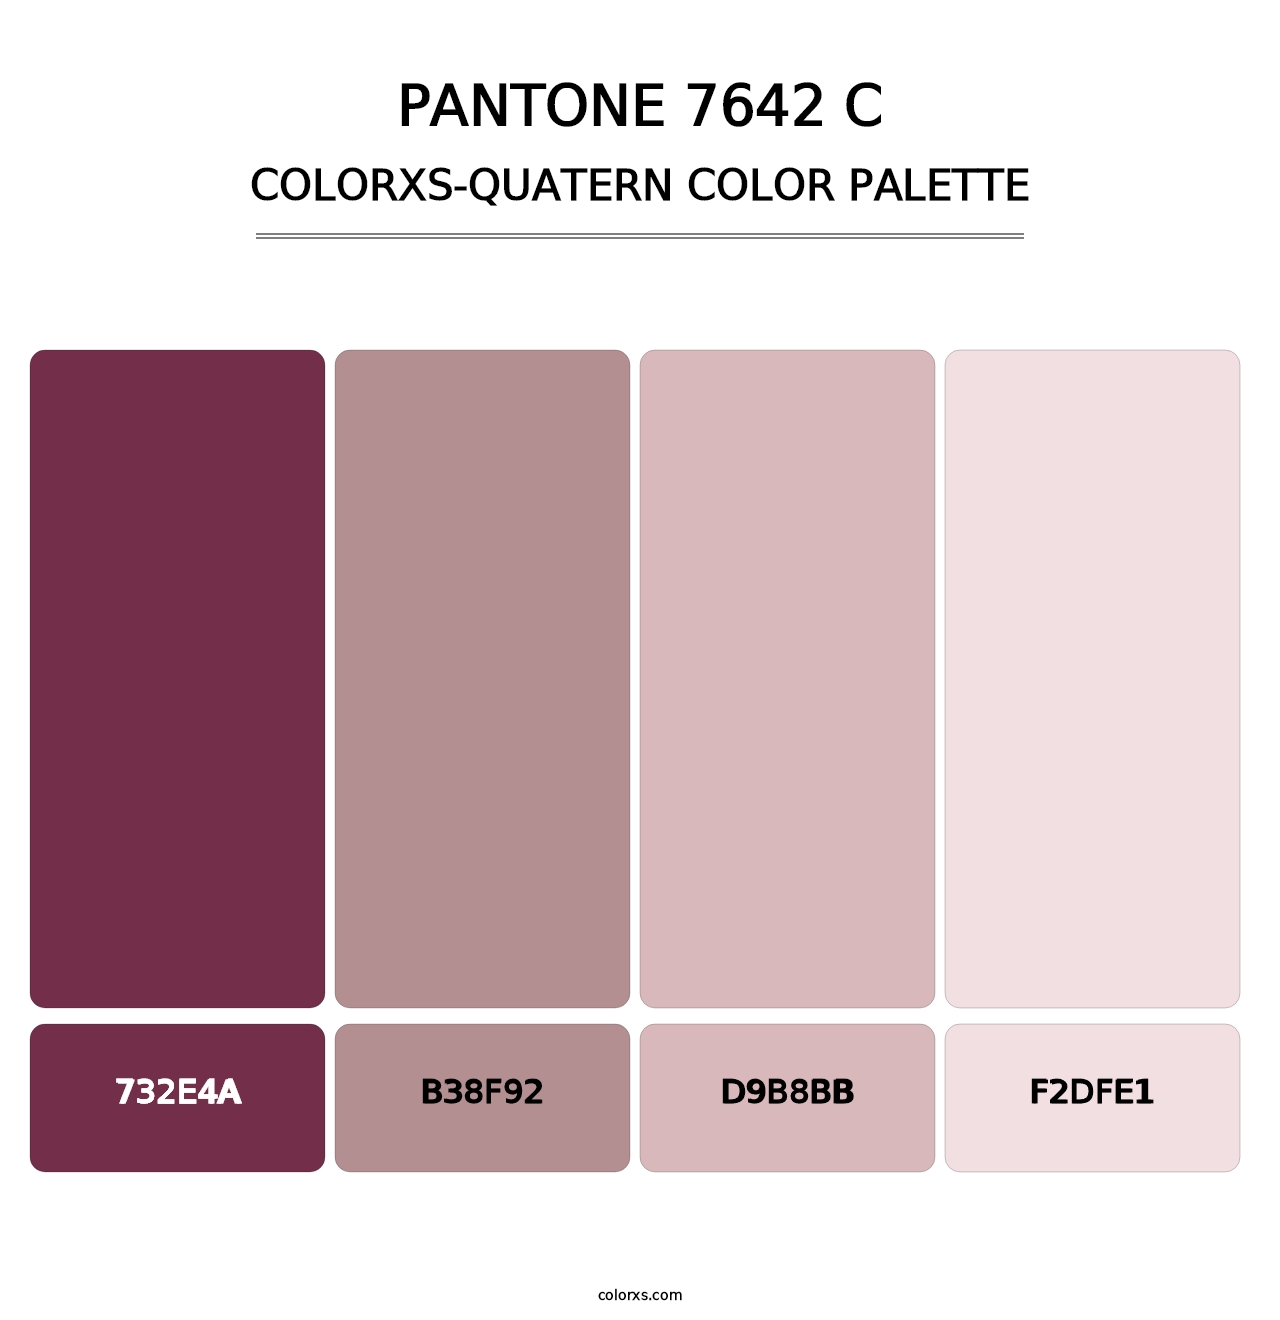 PANTONE 7642 C - Colorxs Quatern Palette